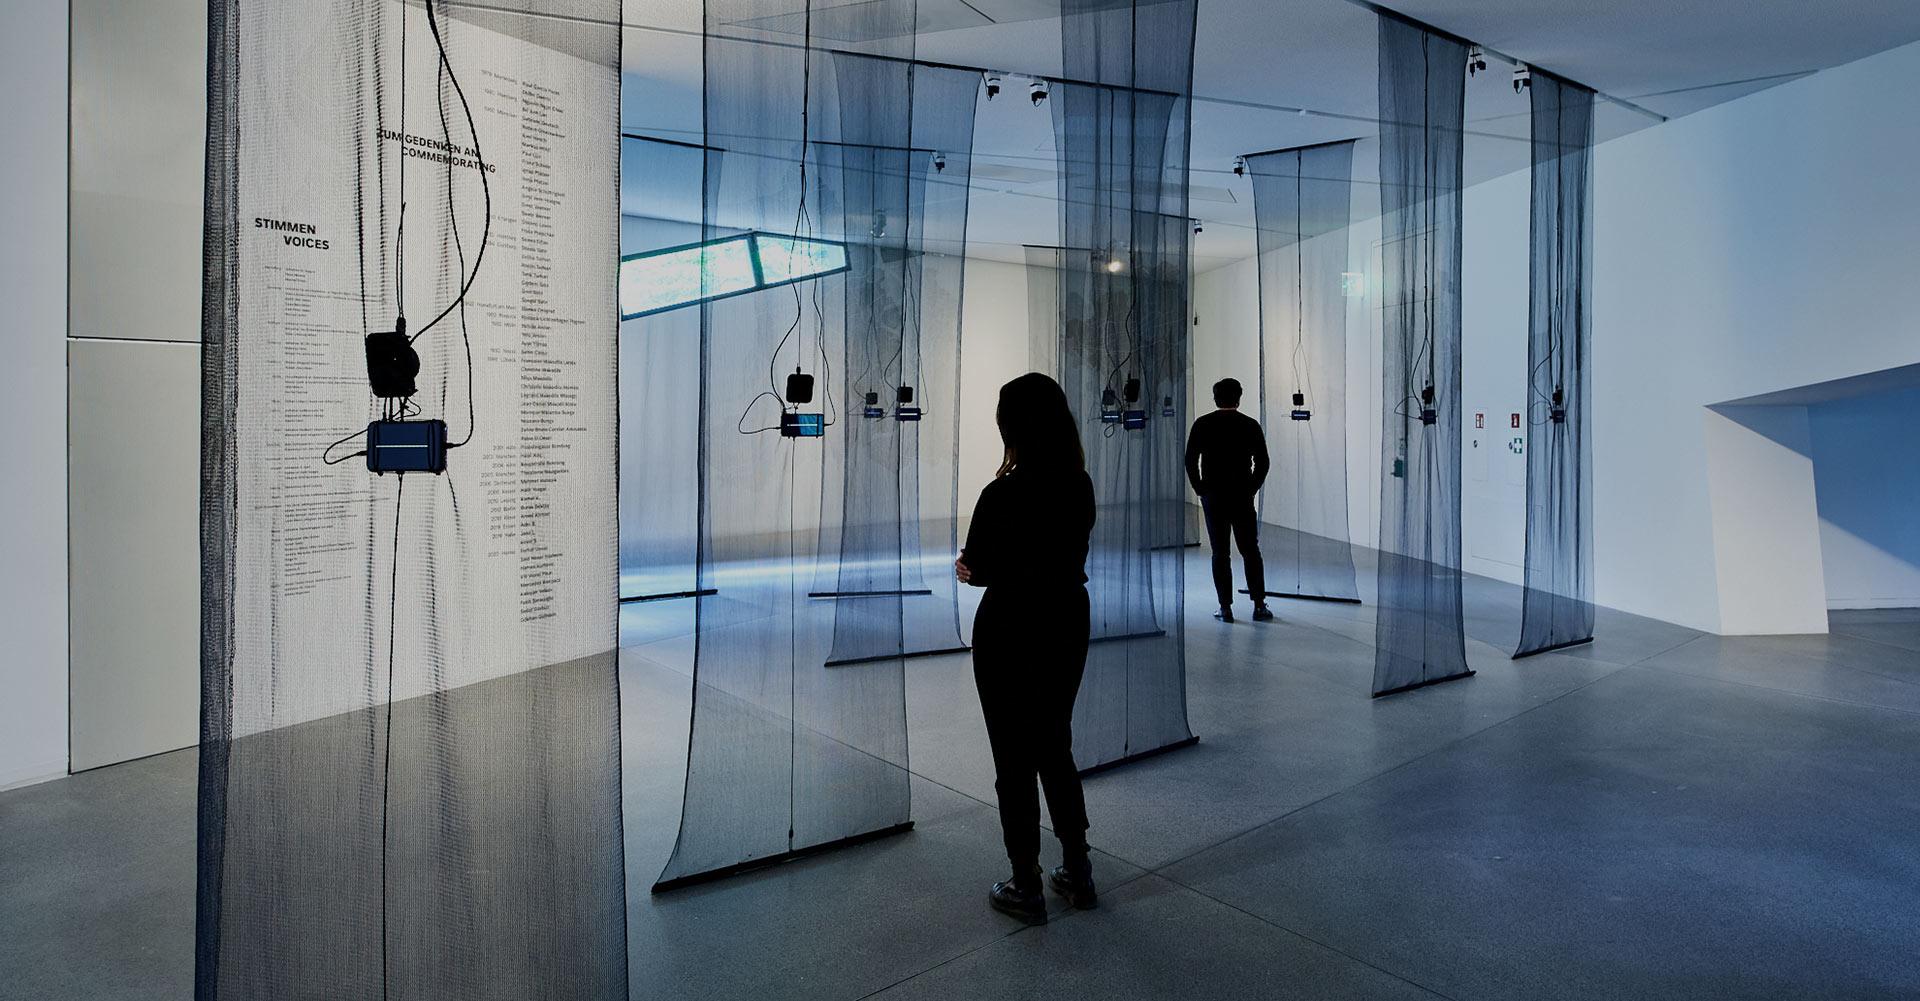 	Raumansicht der Ausstellung mit Besucher:innen, von der Decke hängen schwarze durchsichtige Stoffbahnen, an denen je ein Smartphone mit Soundwellen auf dem Display befestigt ist